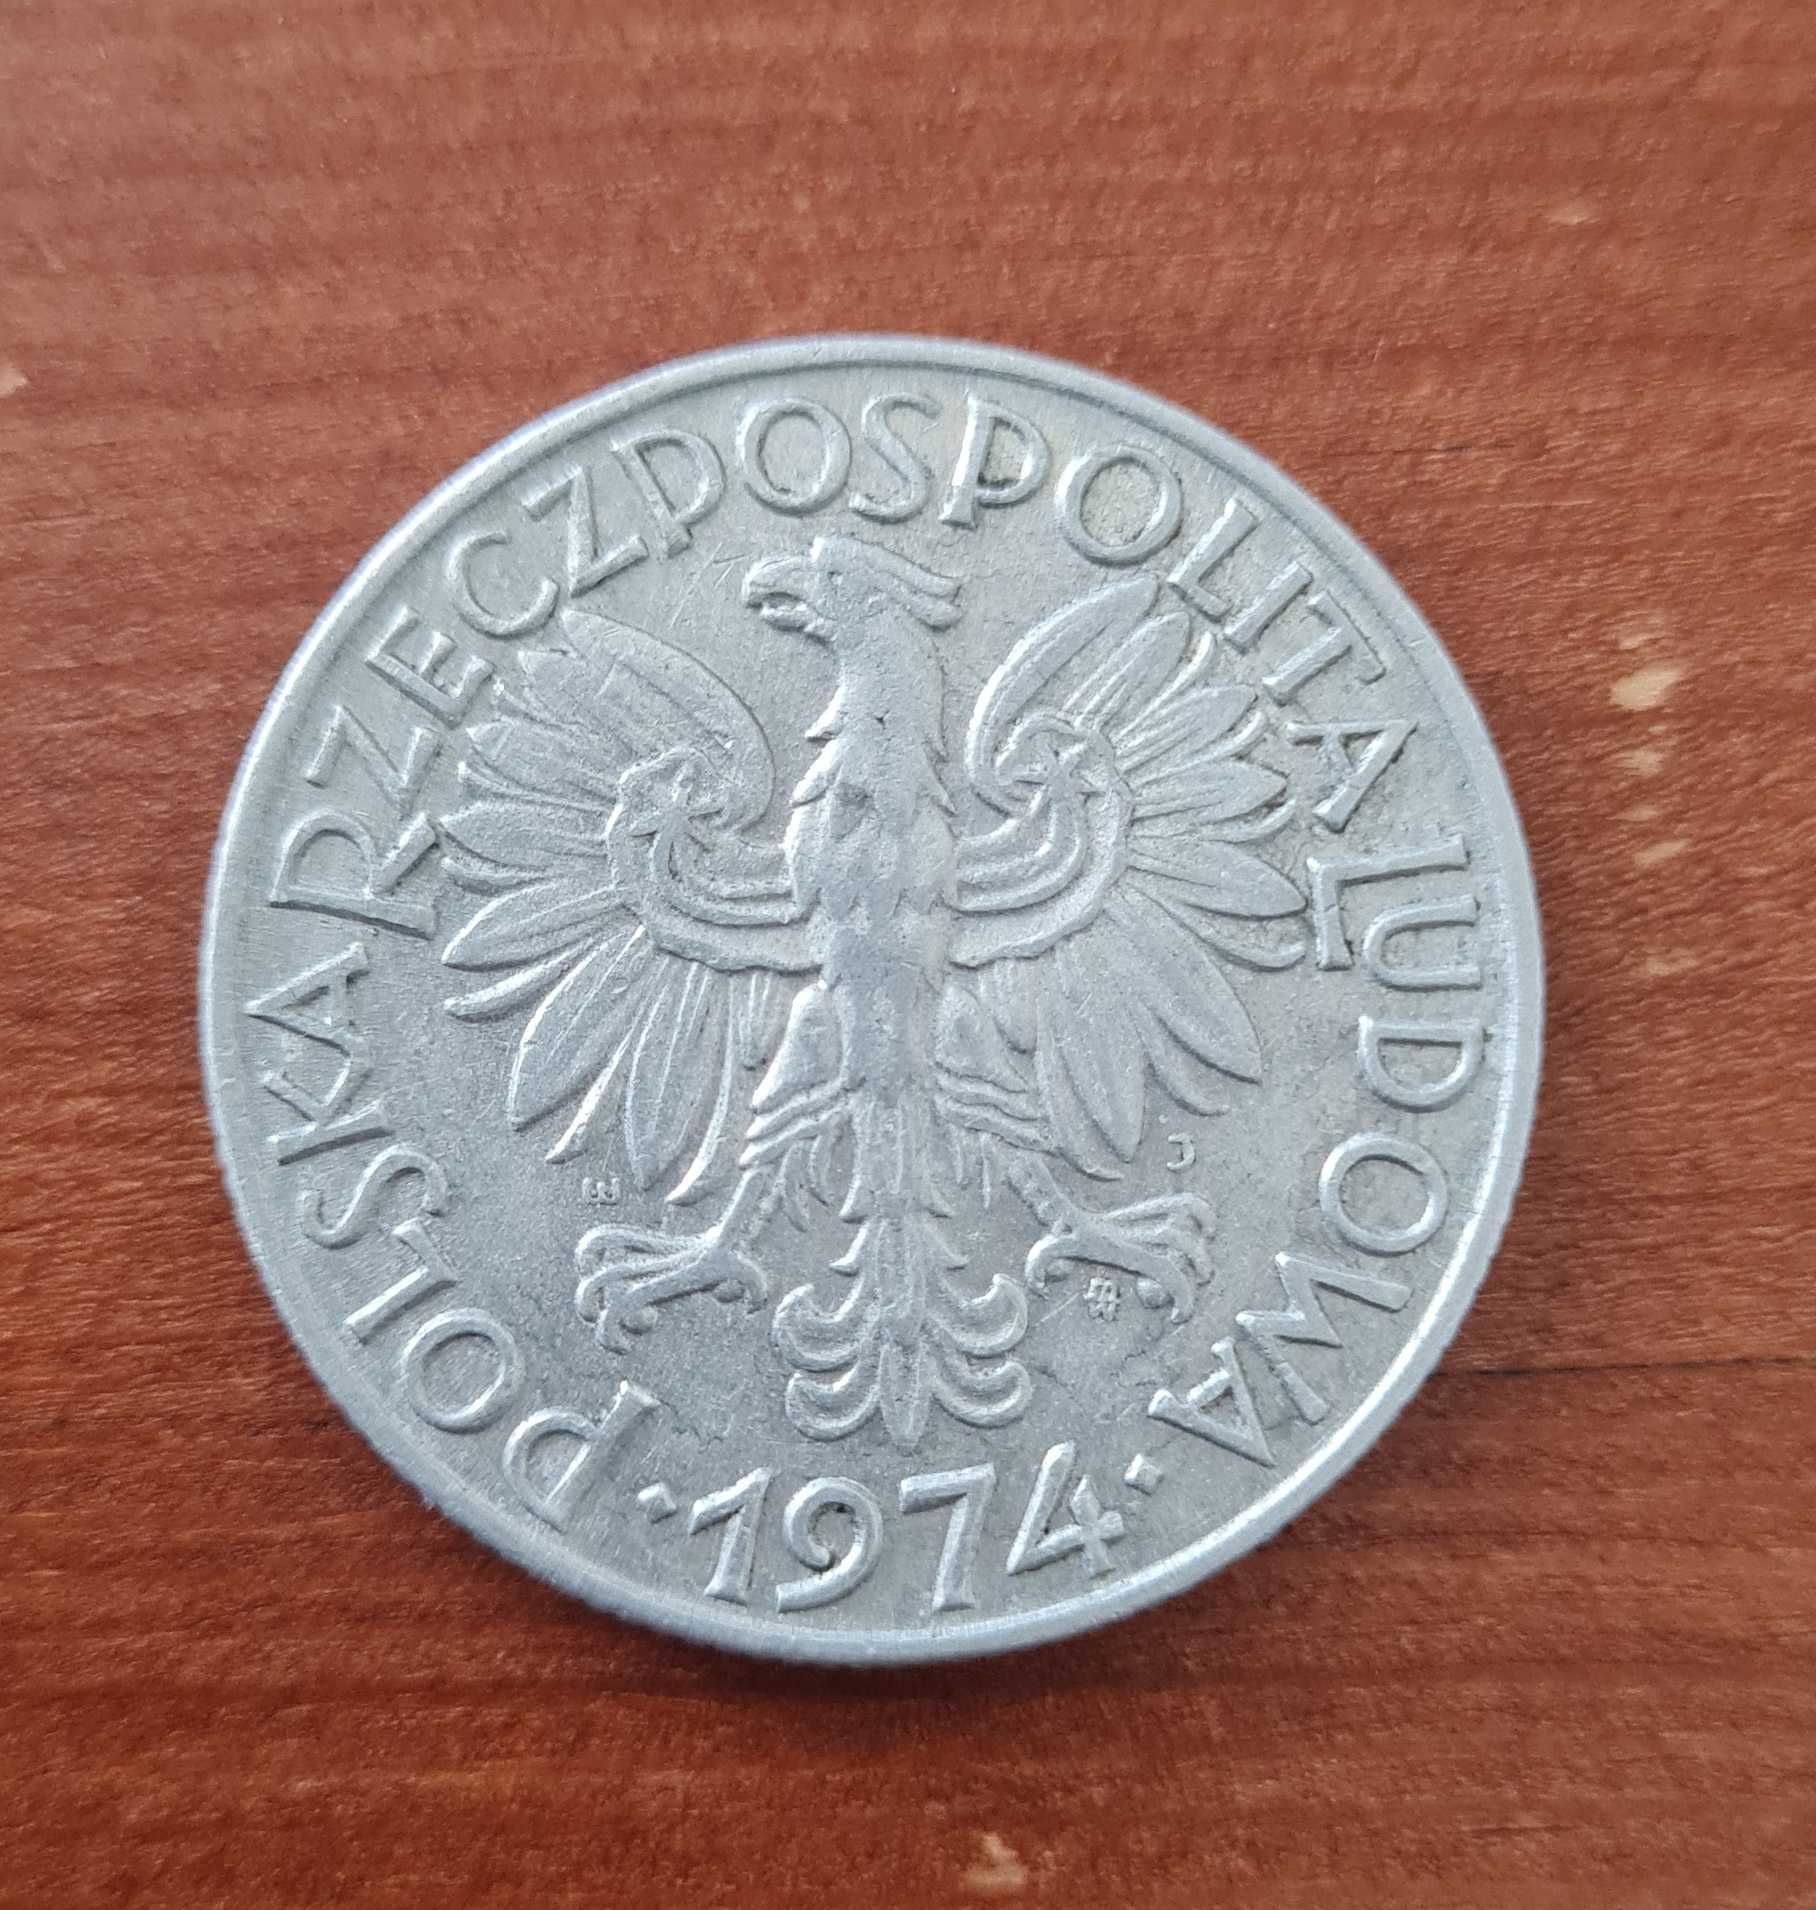 Moneta 5zl ze znakiem mennicy z 1974 r